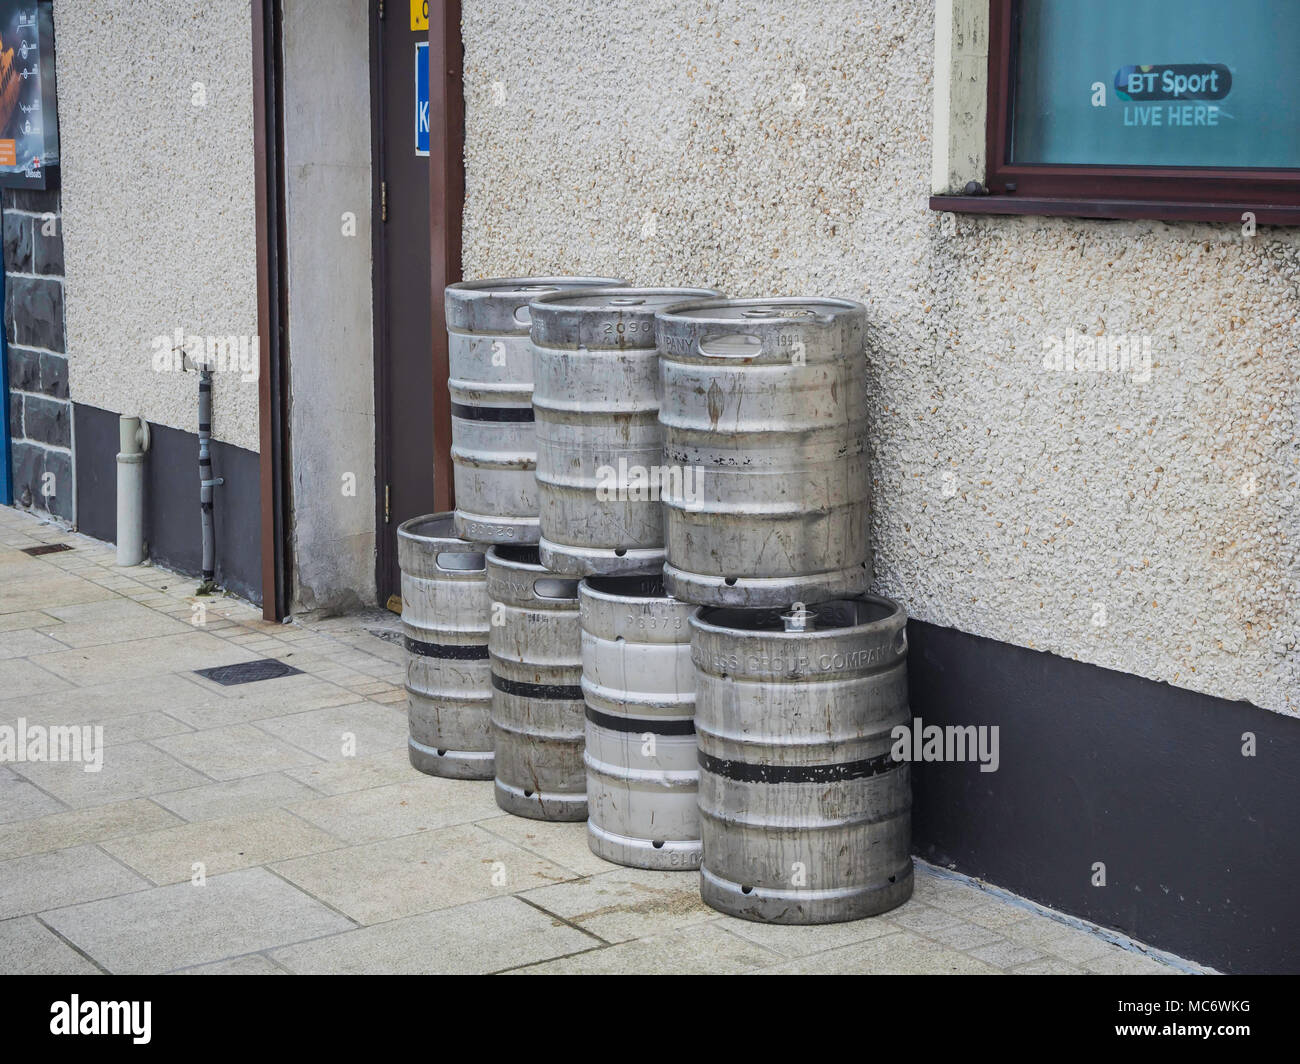 Svuota barili di birra in attesa di raccolta al di fuori di un pub Foto Stock